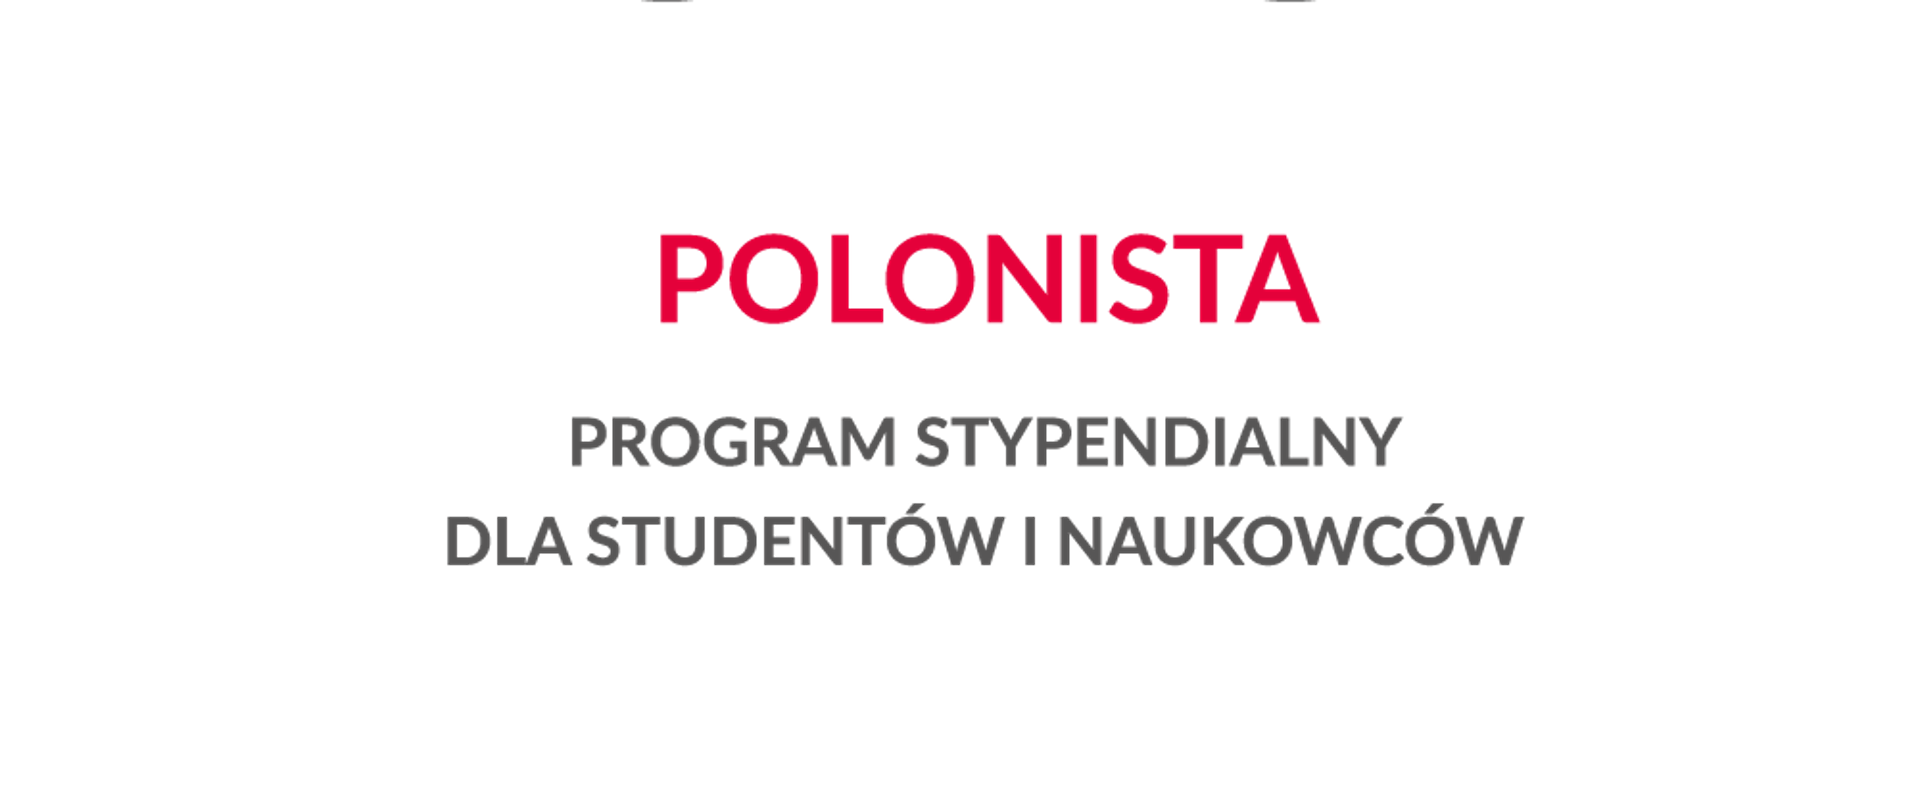 nabór w Programie stypendialnym dla studentów i naukowców POLONISTA (2021).